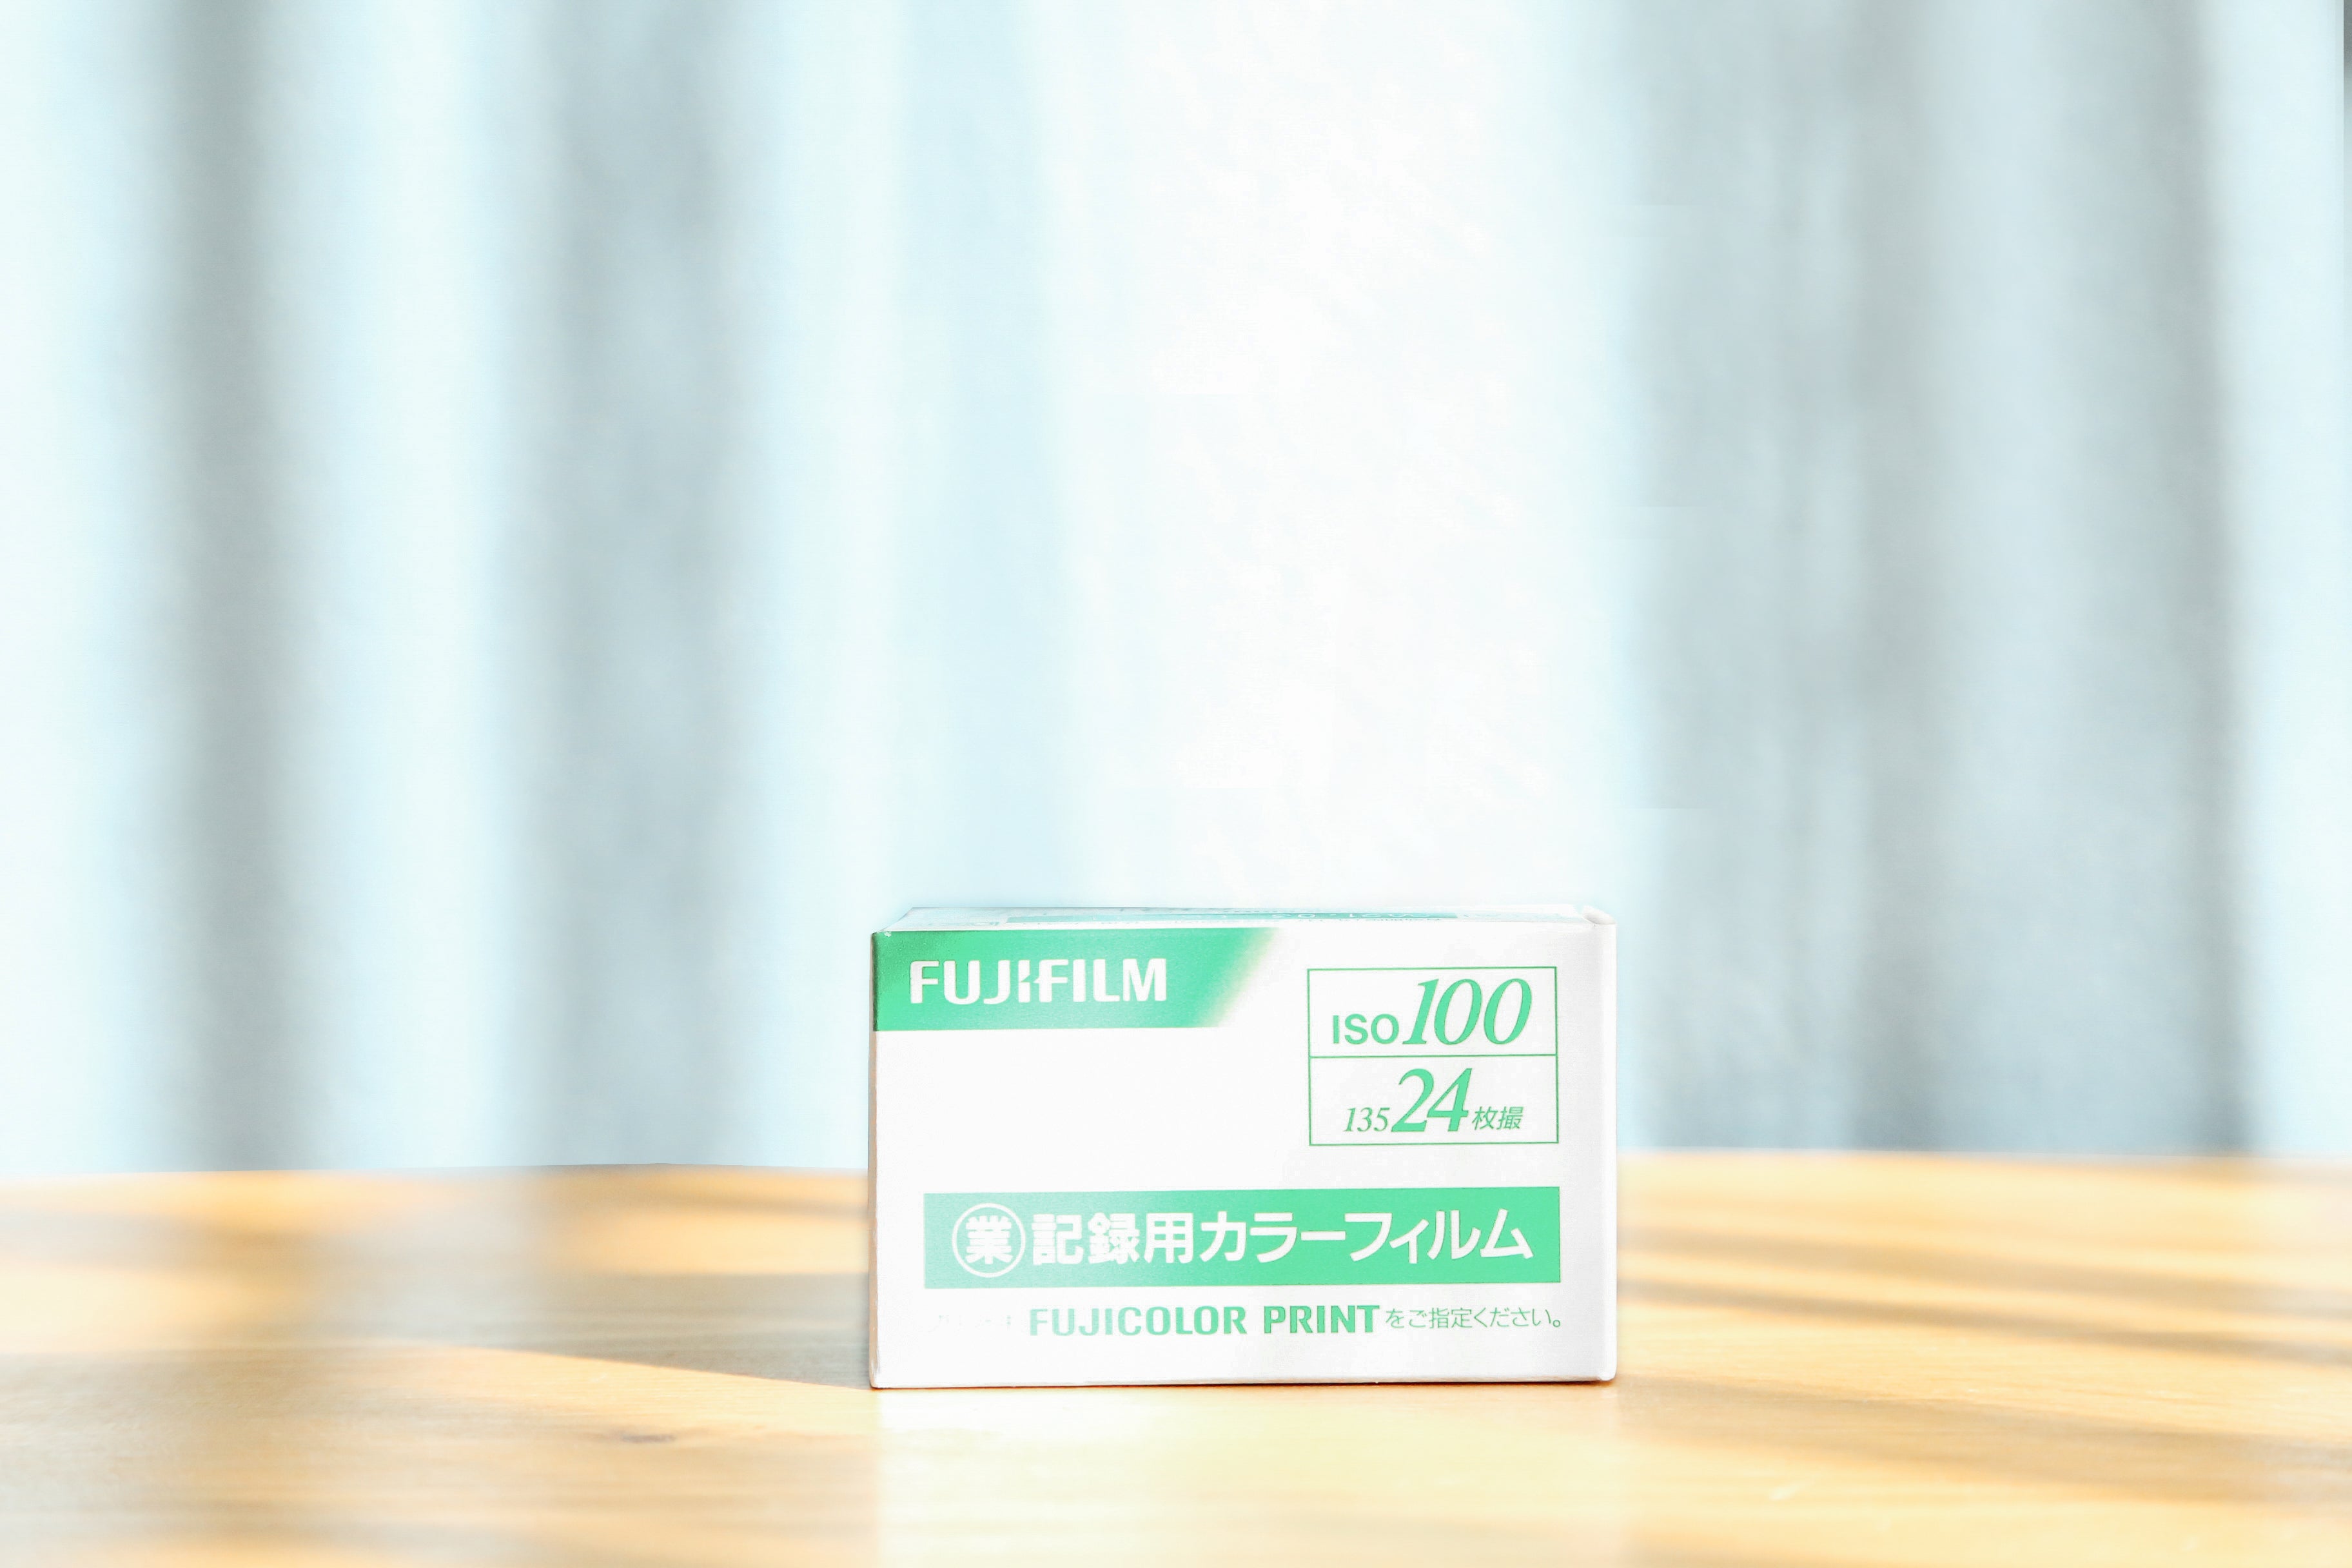 FUJIFILM 業務用フィルム100 (35mmフィルム) 24枚撮り カラーネガ ...